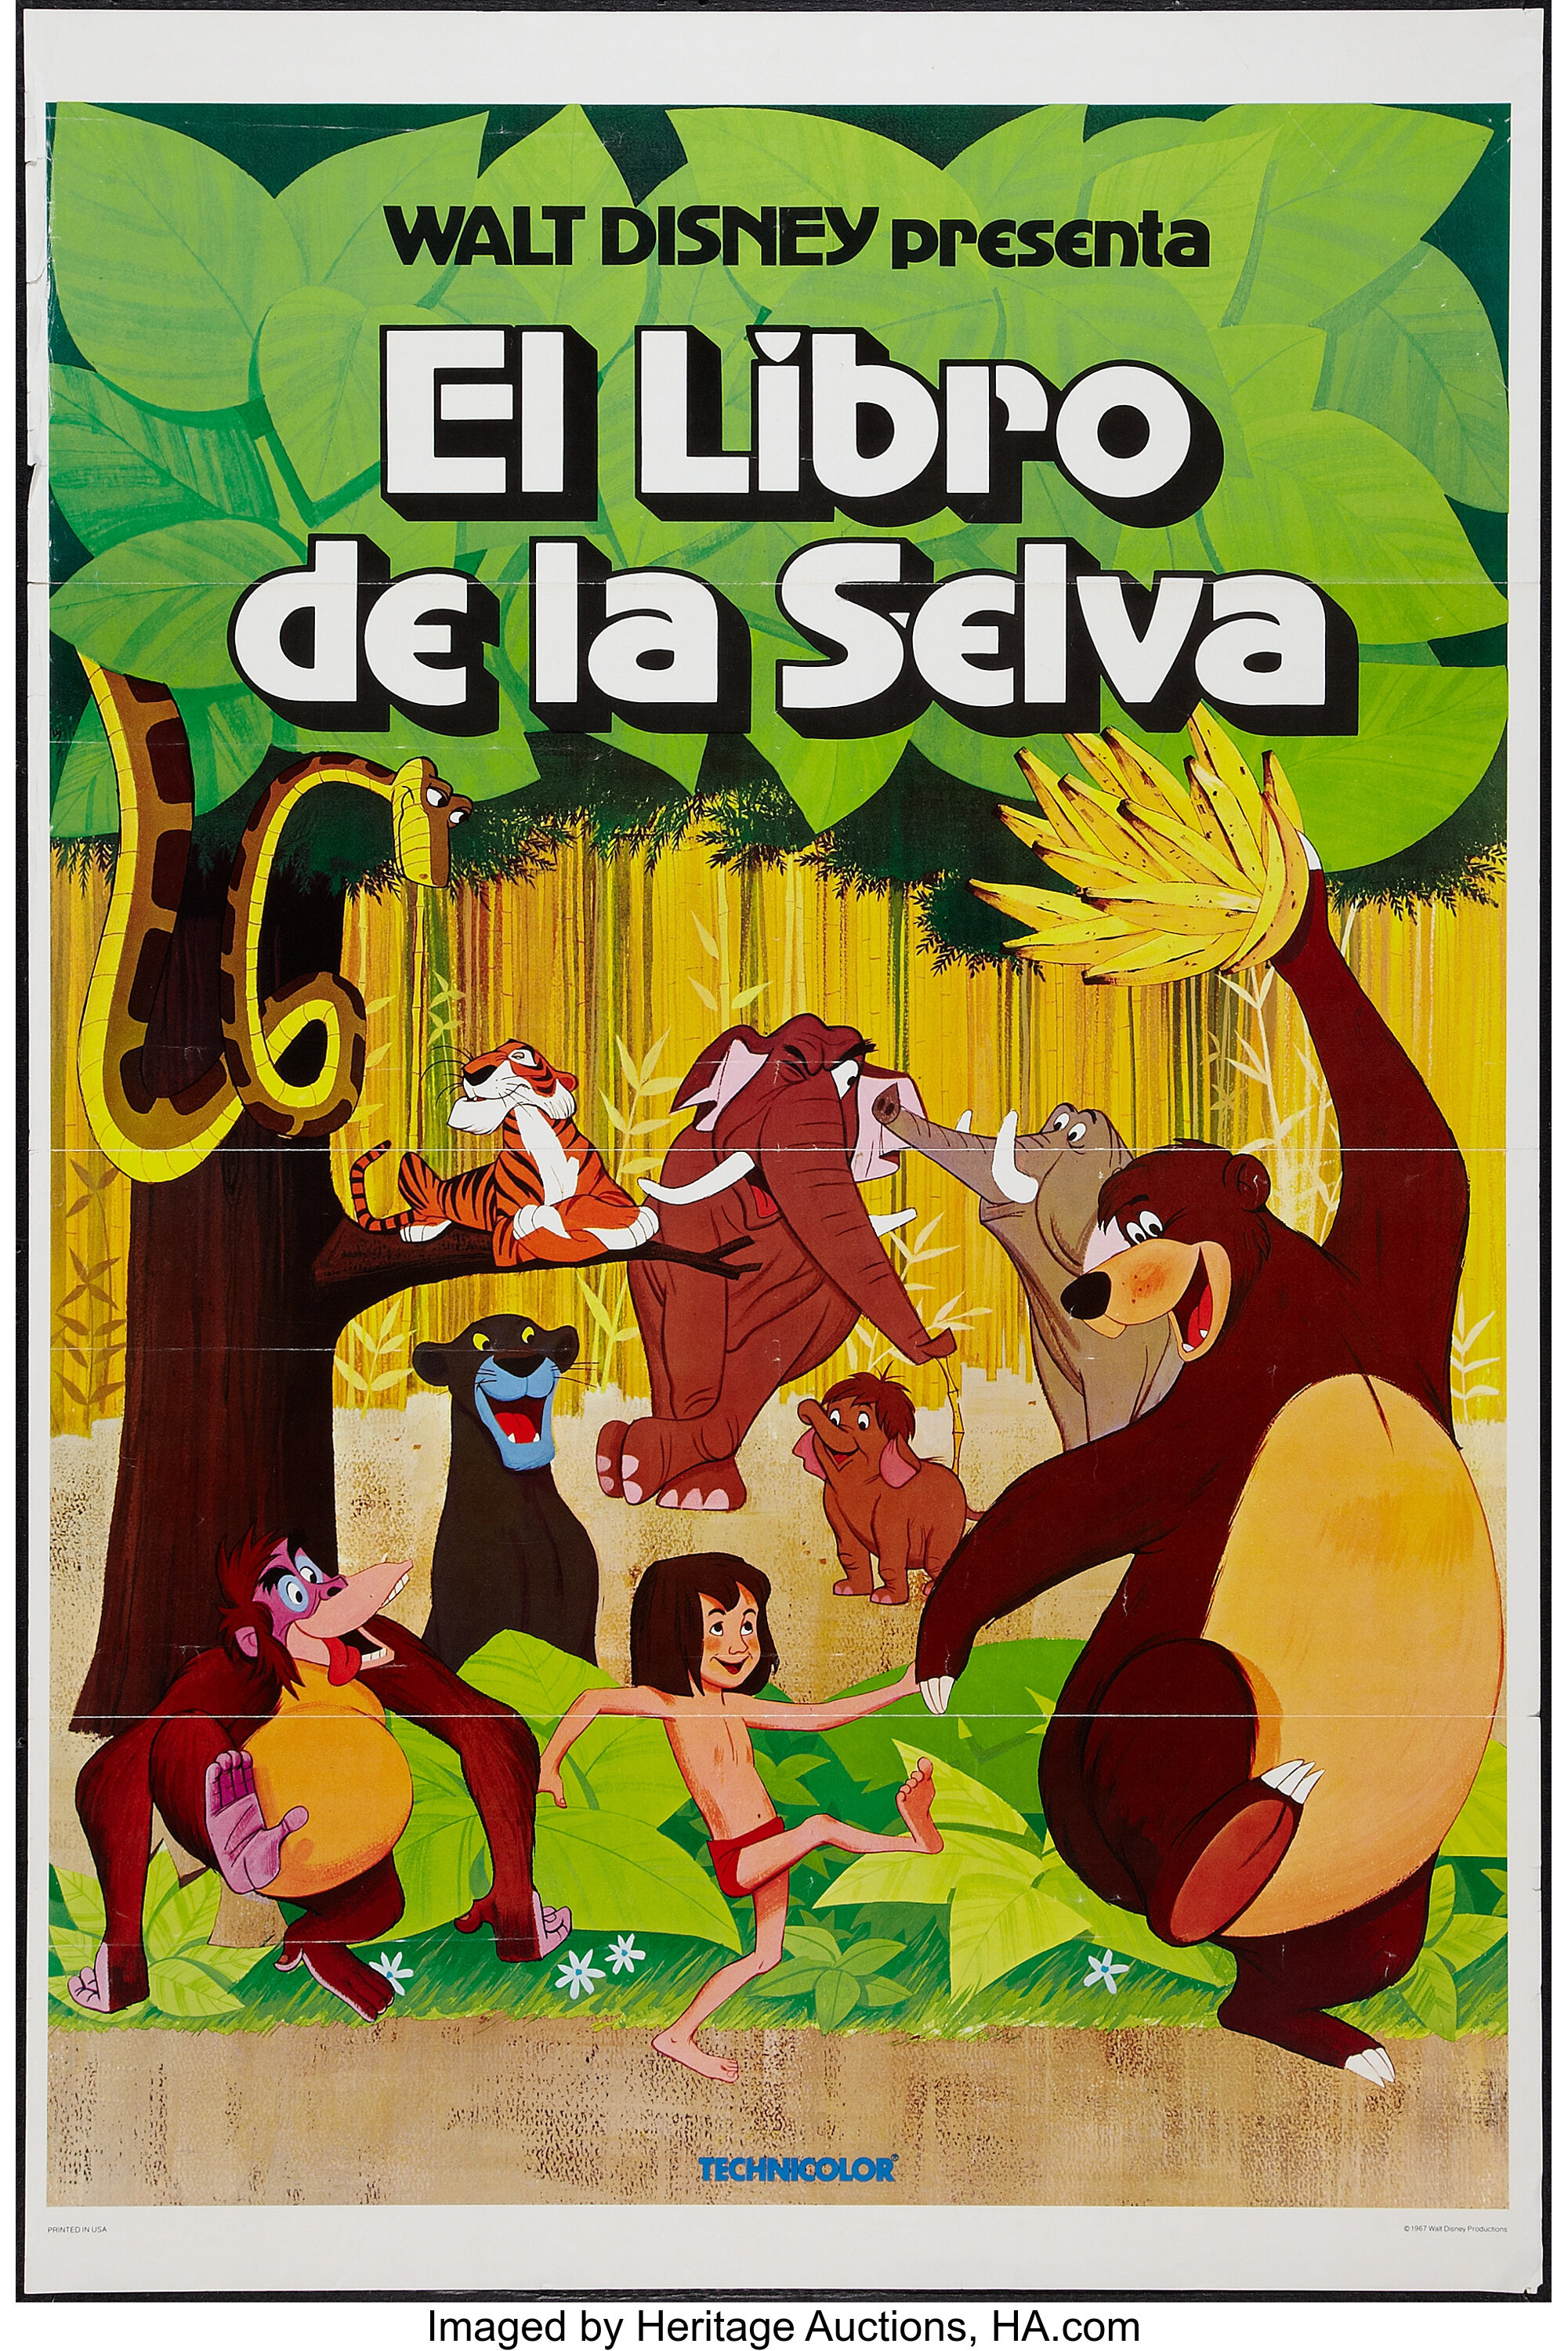 El libro de la selva, The Jungle Book in Spanish